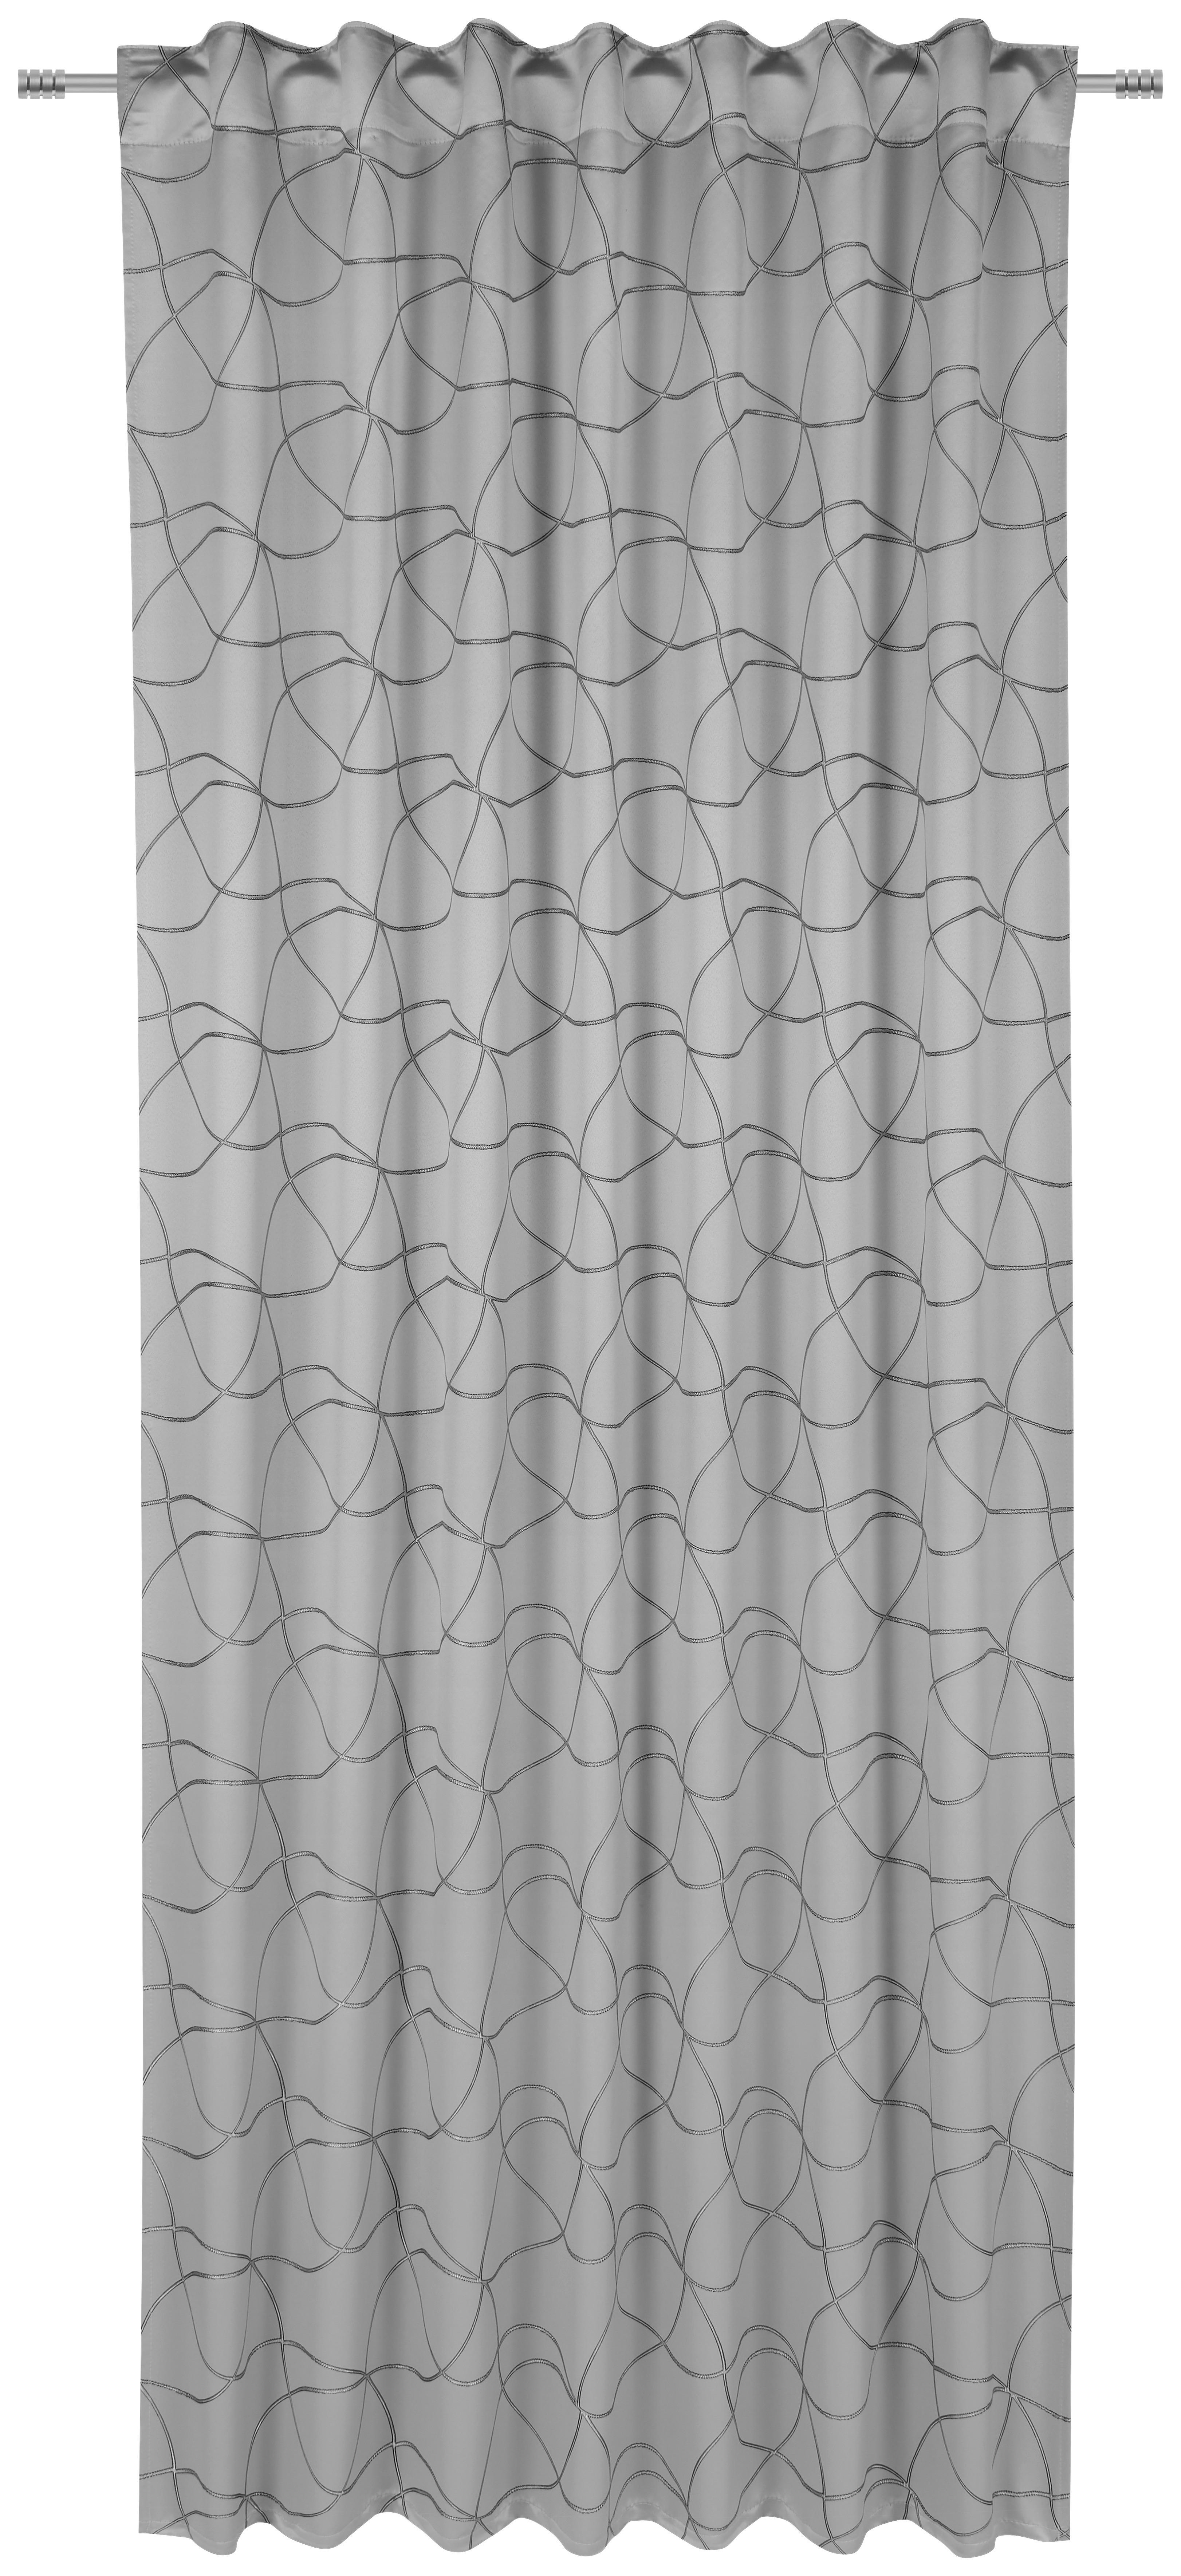 KÉSZFÜGGÖNY Részben fényzáró  - Ezüst, Konventionell, Textil (140/245cm) - Dieter Knoll